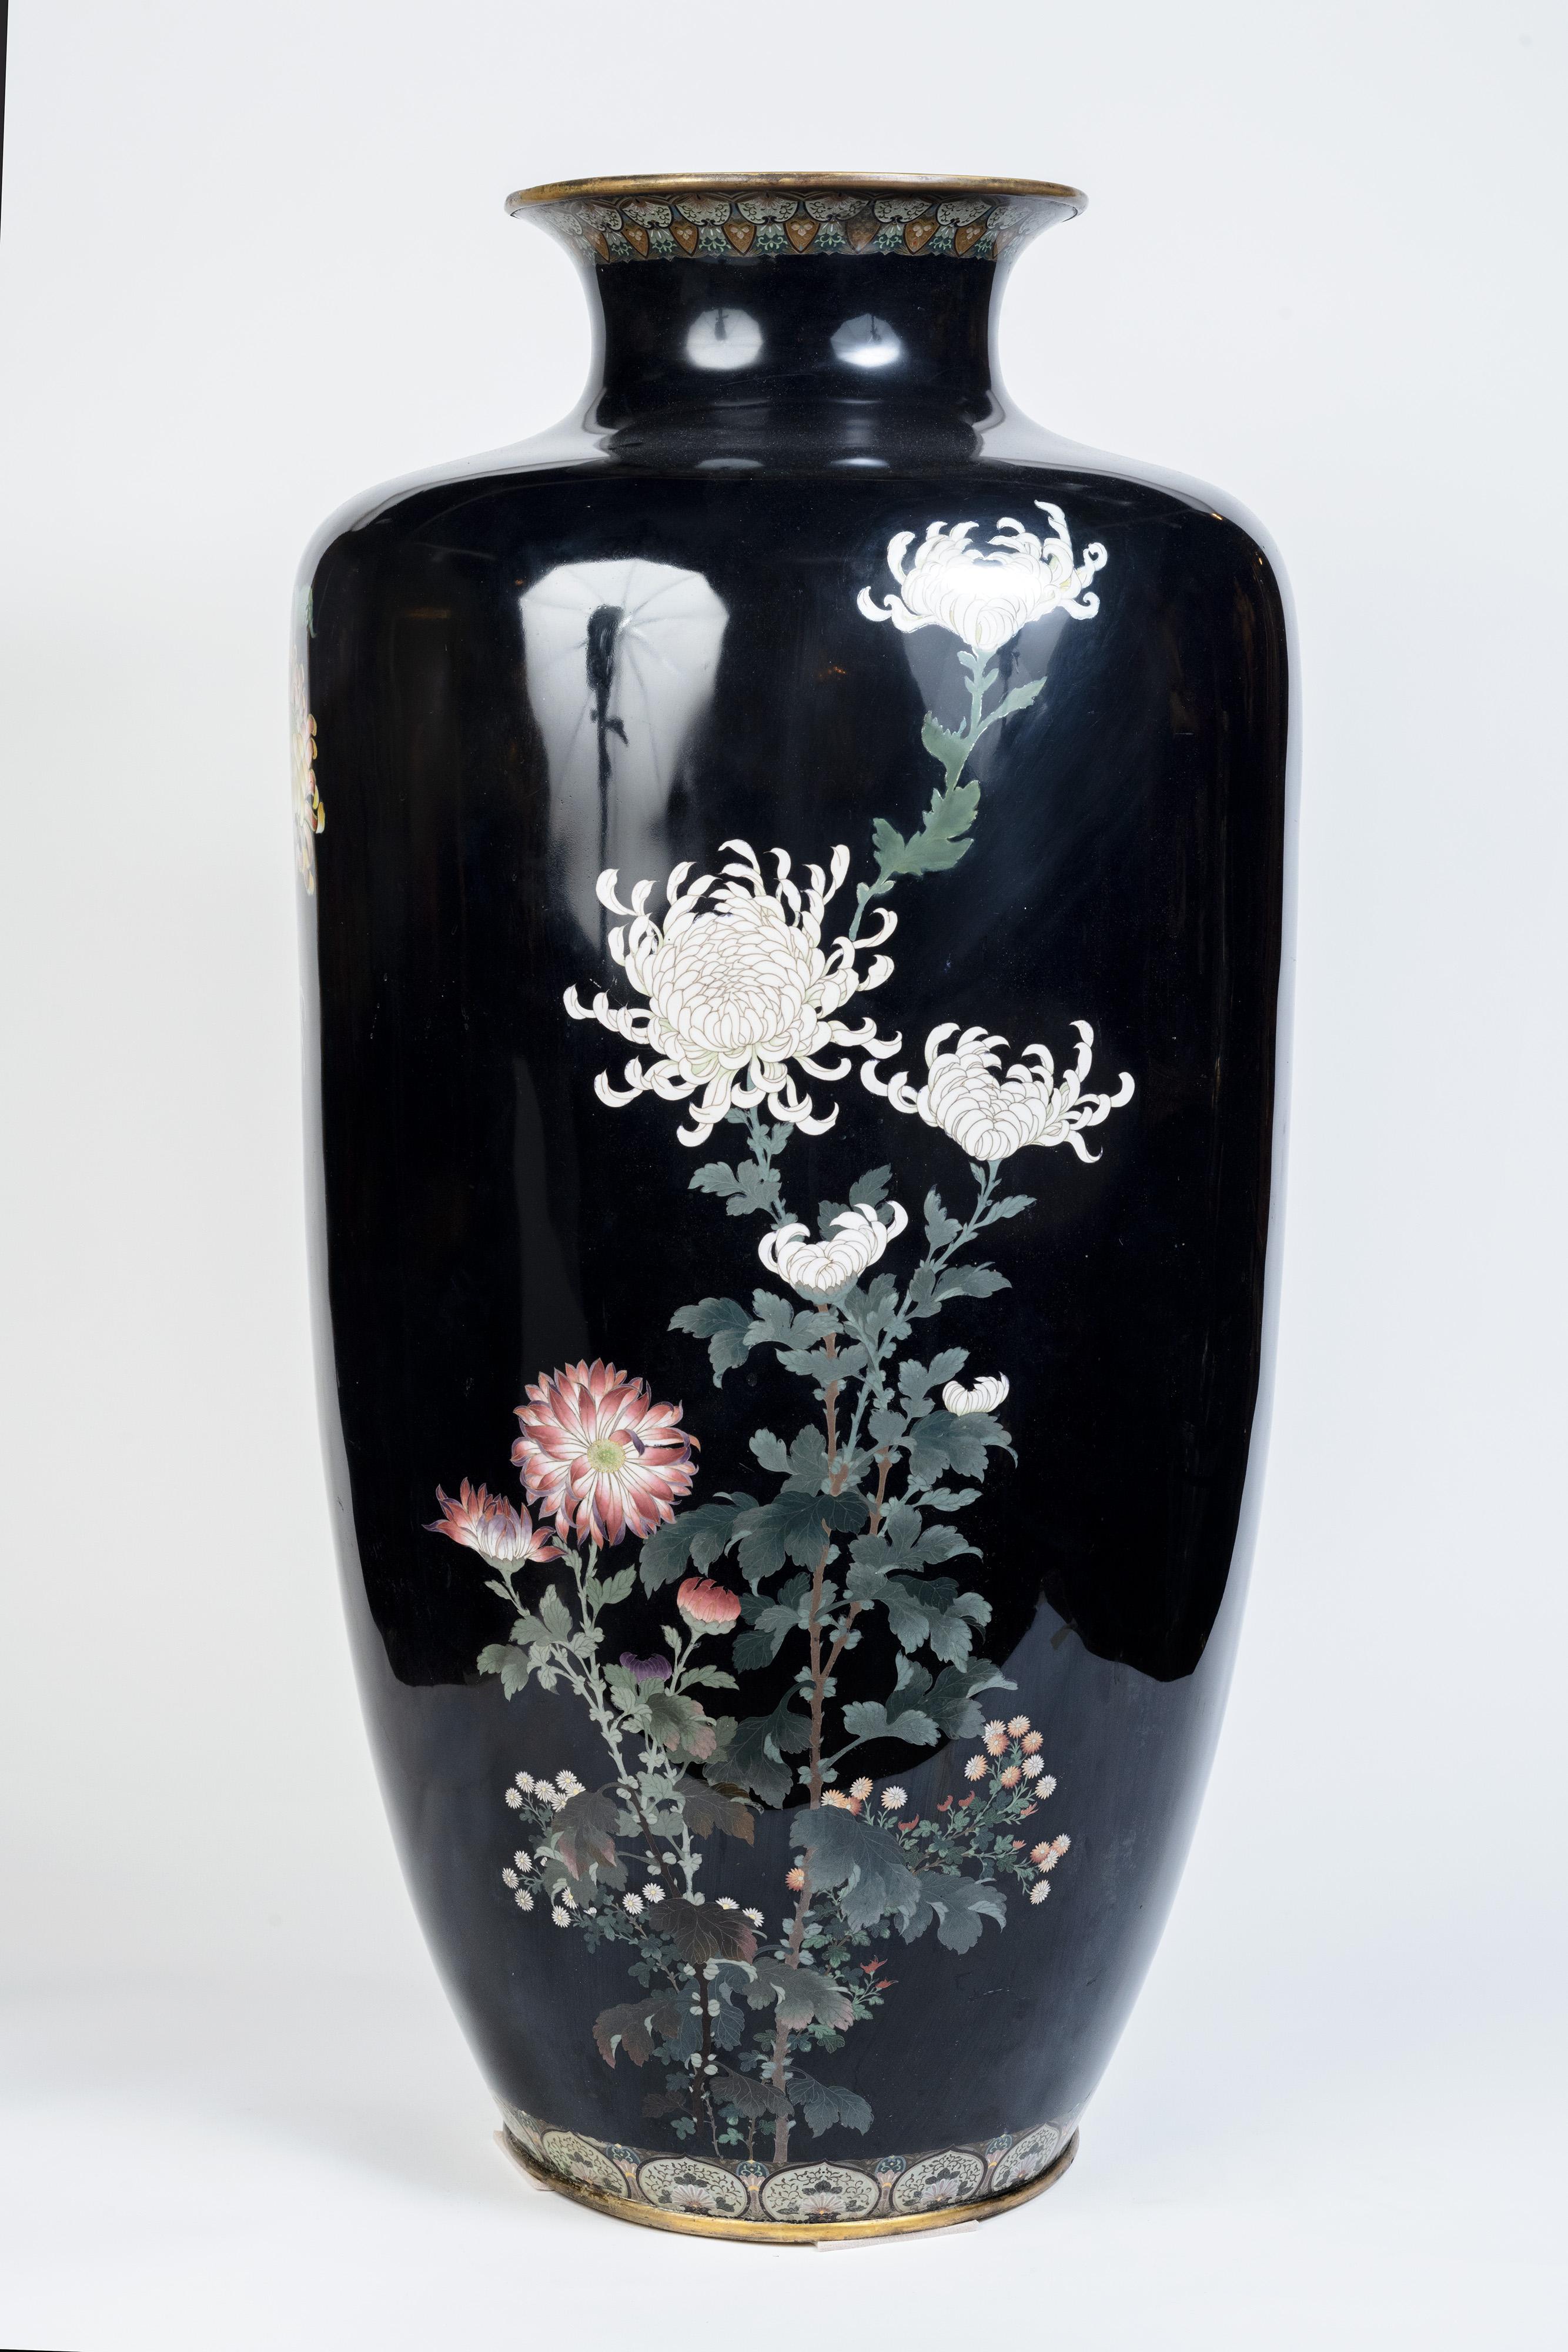  Vase monumental en émail cloisonné japonais, attribué à Hayashi Kodenji

